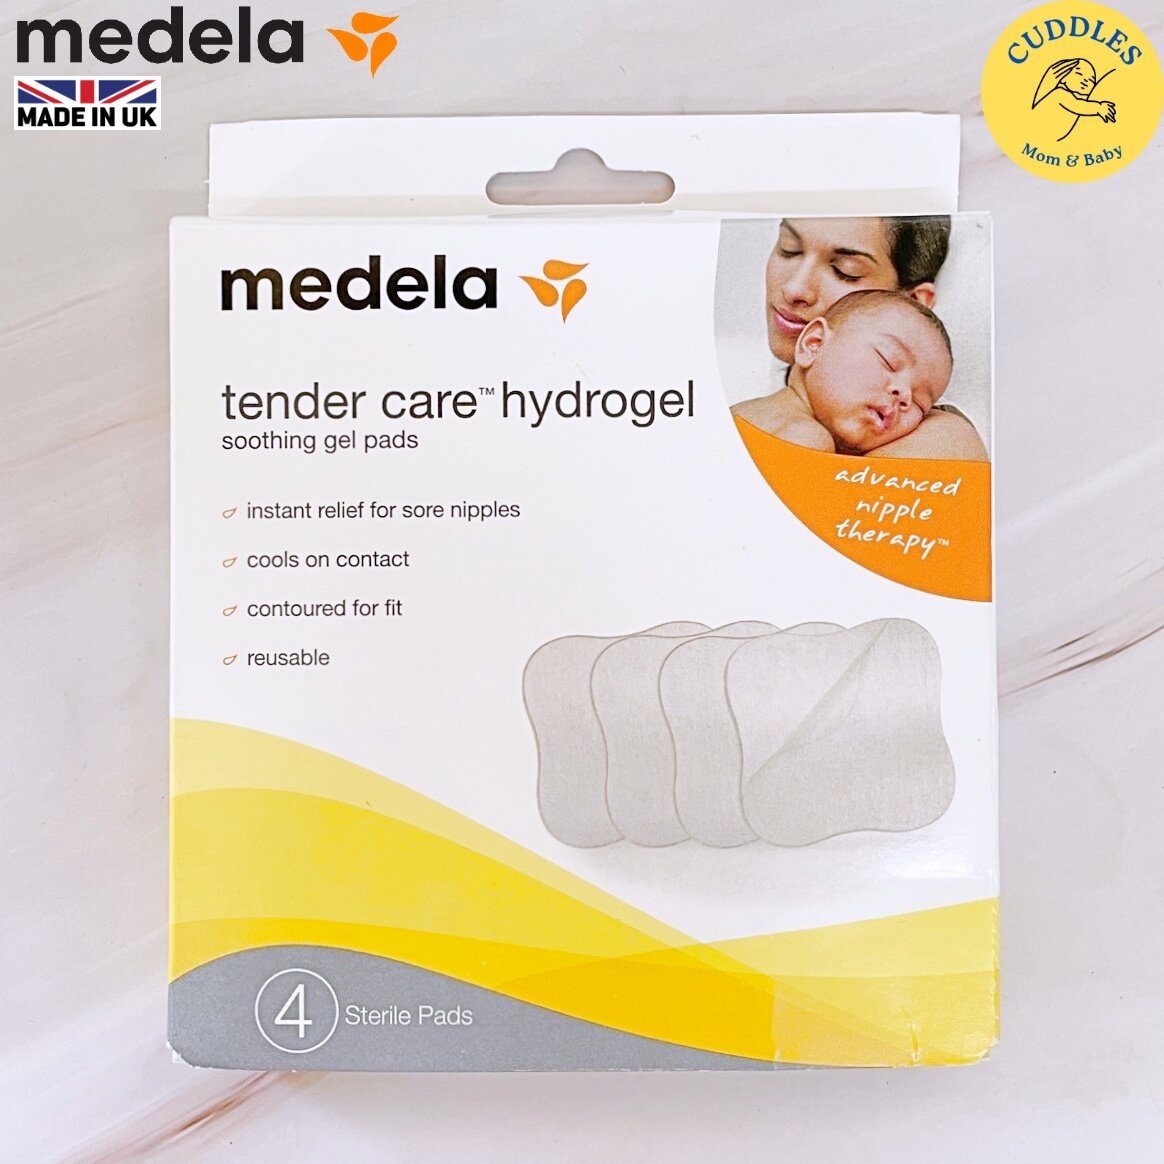 Medela) Tender Care Hydrogel Soothing Gel Pads 4 Count แผ่นไฮโดรเจล  กันหัวนมเจ็บ ลดการคัดเคืองเต้านมของคุณแม่